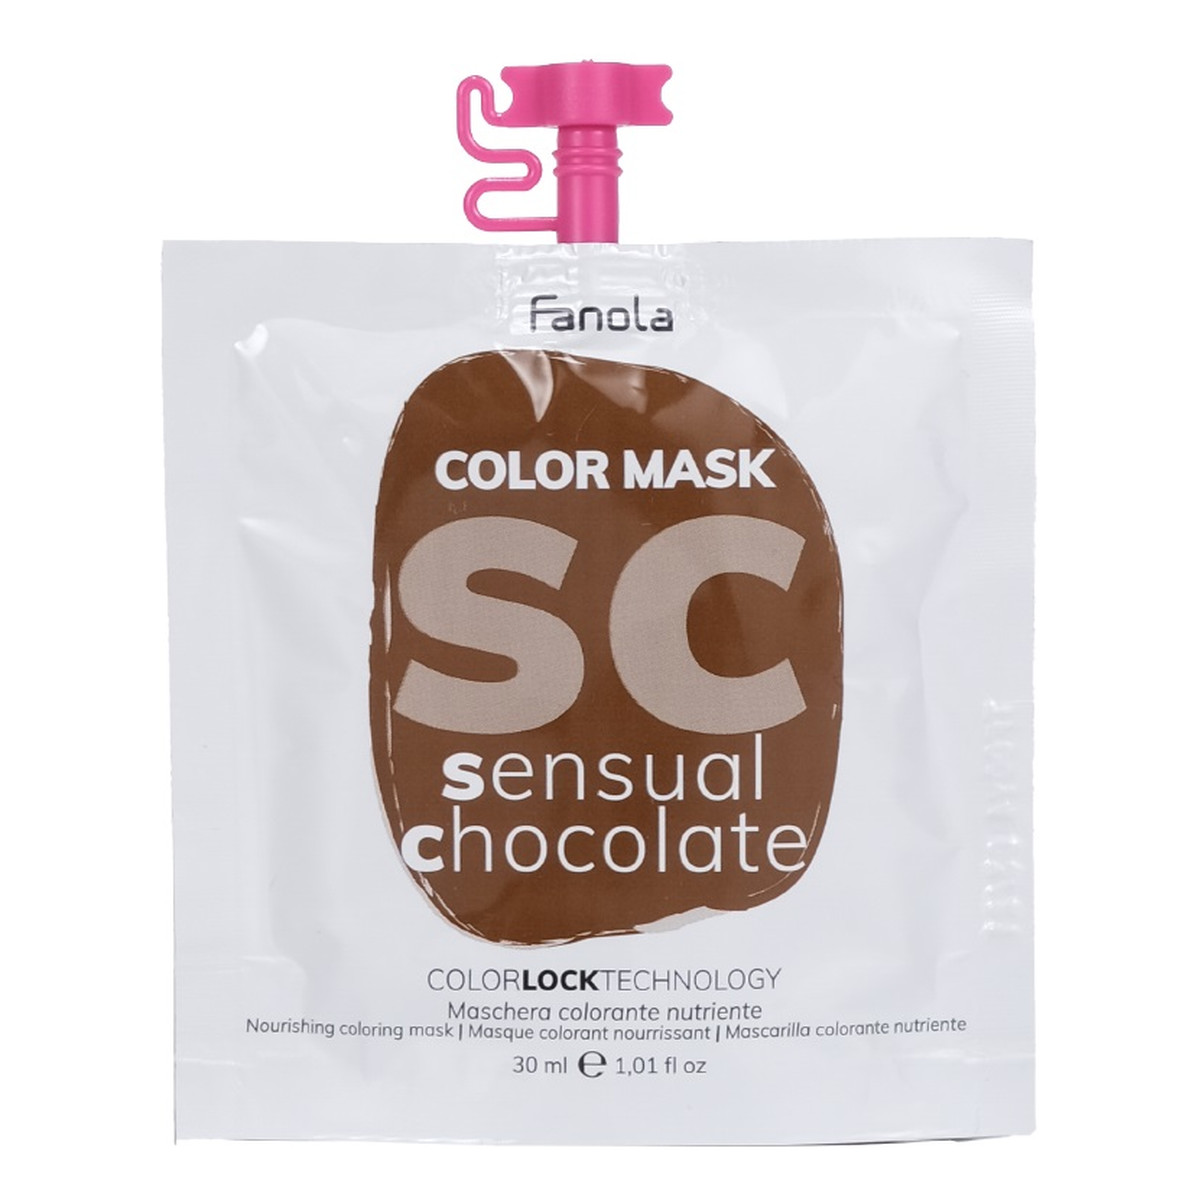 Fanola Color mask maska koloryzująca do włosów sensual chocolate 30ml